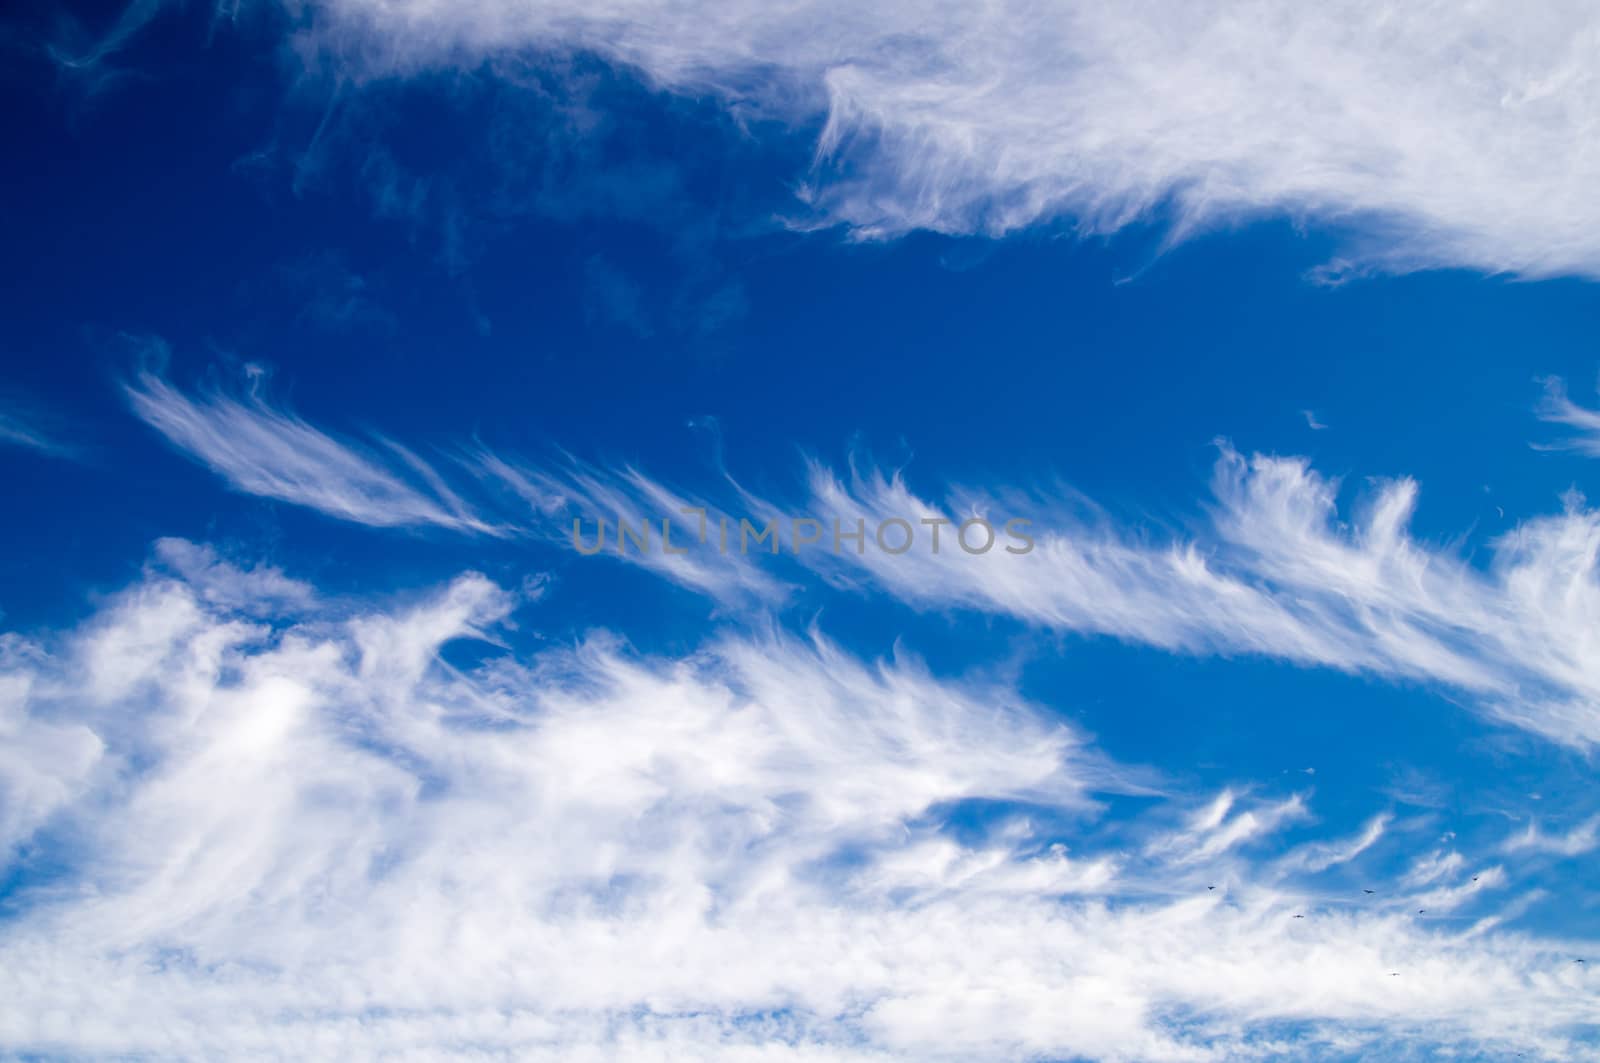 Clouds on blue sky Nevada, USA